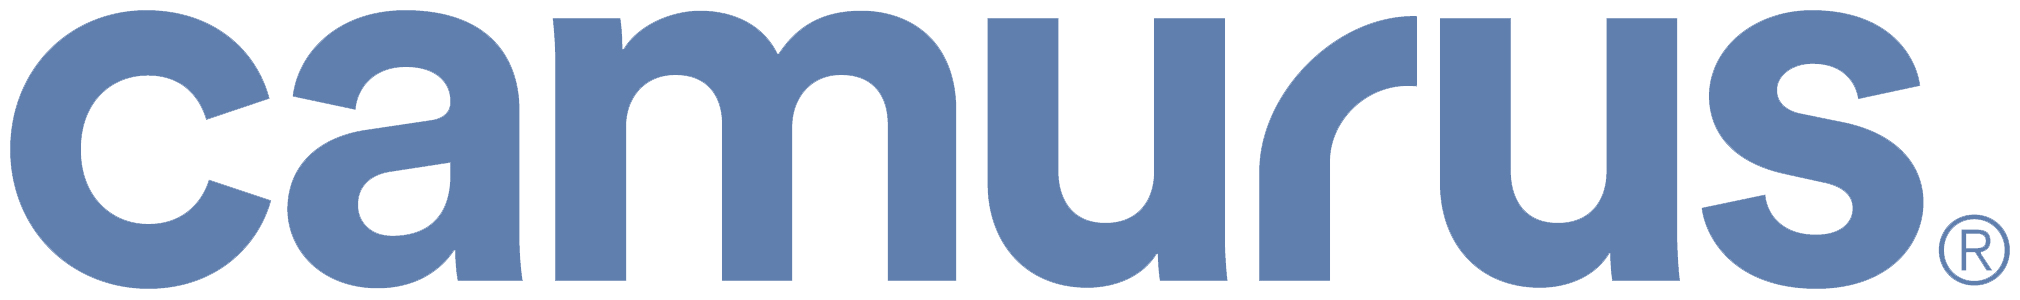 Camurus logo